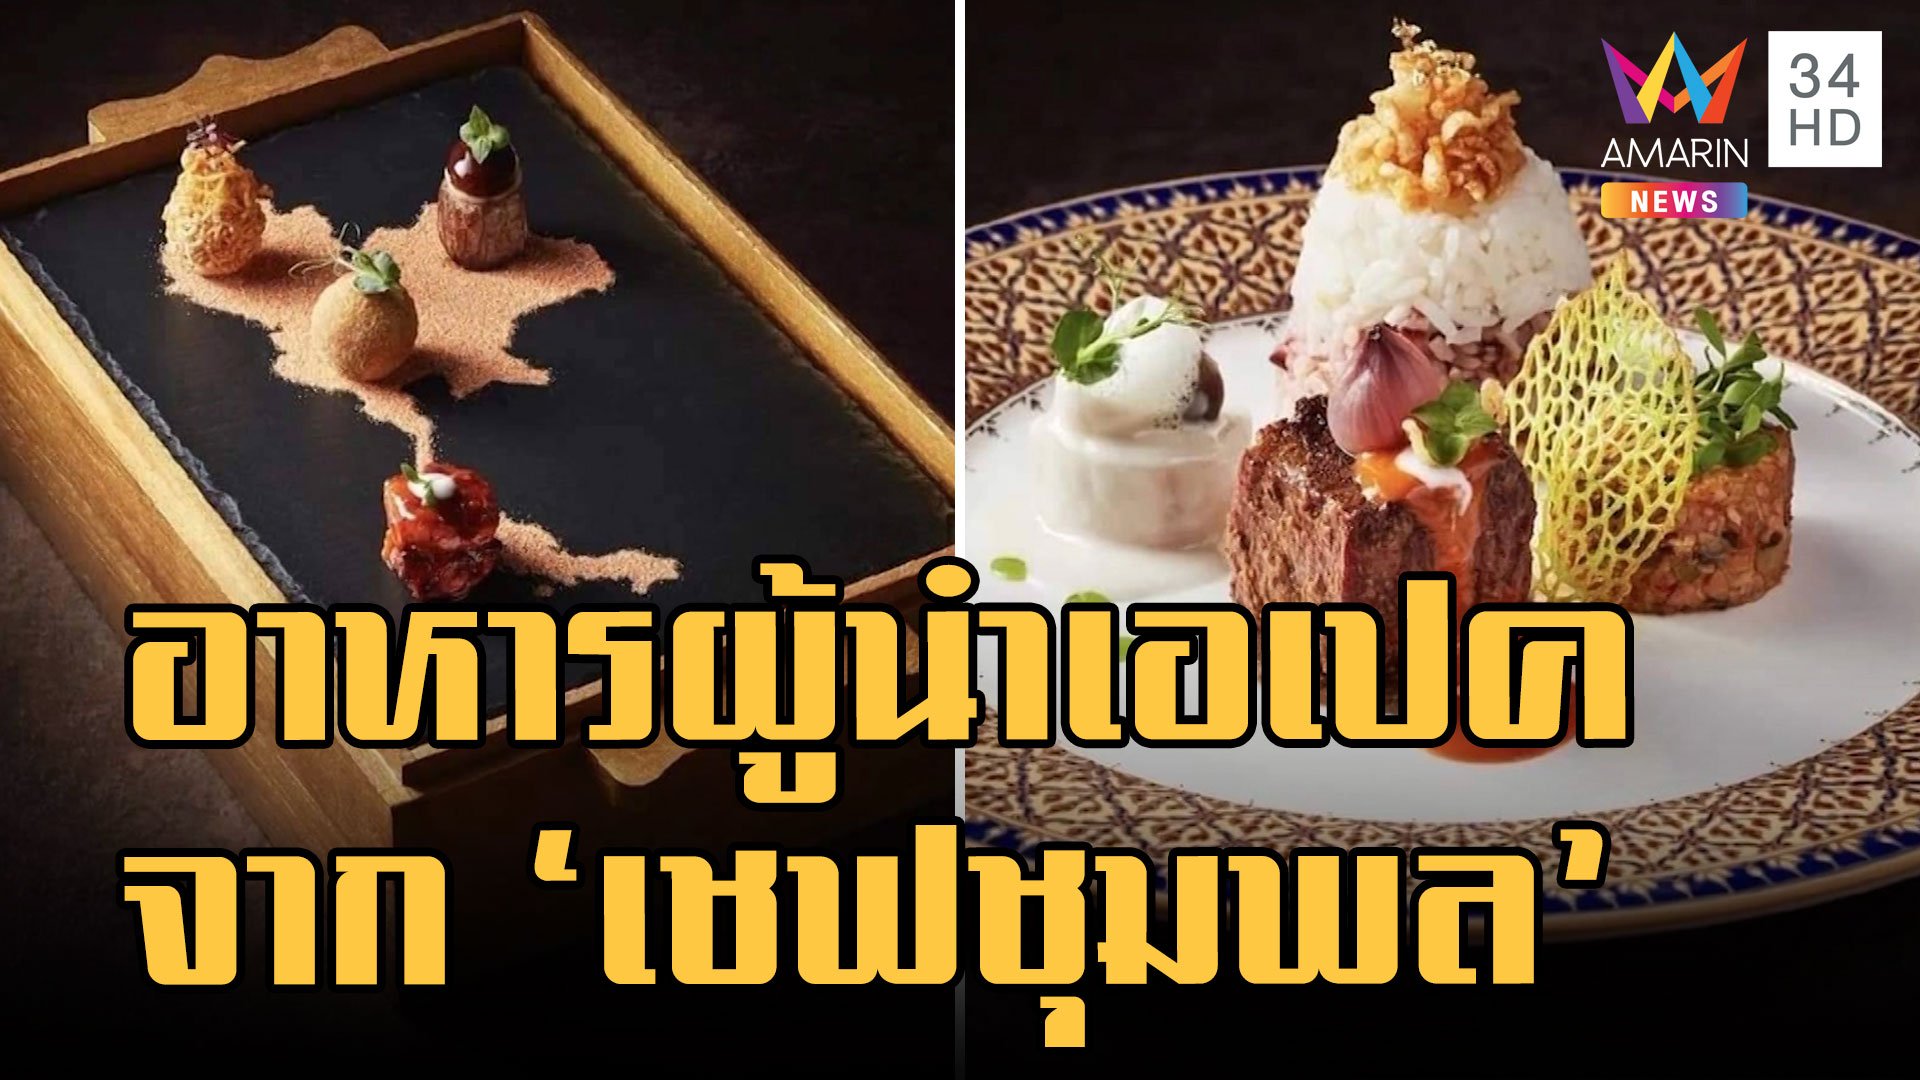 ส่องอาหารค่ำผู้นำเอเปค อาหารไทยจากฝีมือ "เชฟชุมพล" | ข่าวอรุณอมรินทร์ | 15 พ.ย. 65 | AMARIN TVHD34